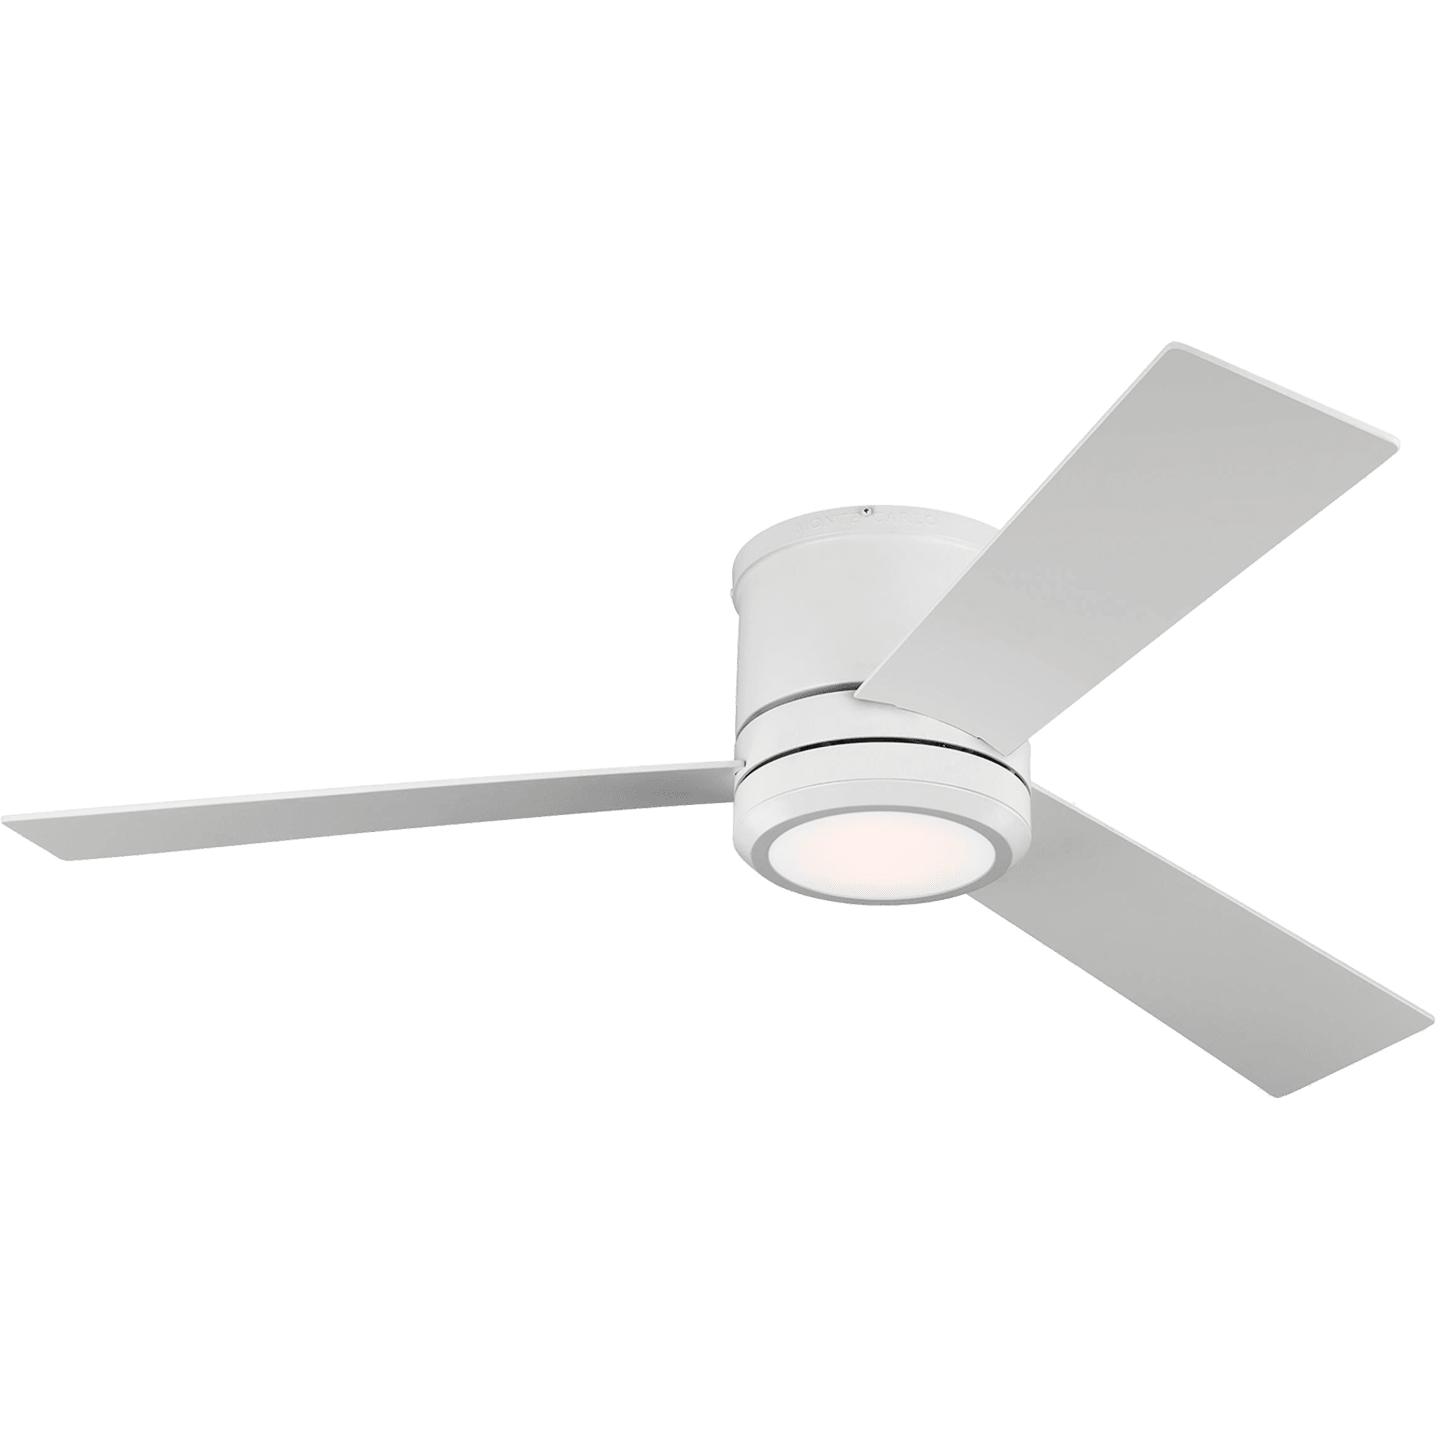 Купить Потолочный вентилятор Clarity 56" LED Ceiling Fan в интернет-магазине roooms.ru